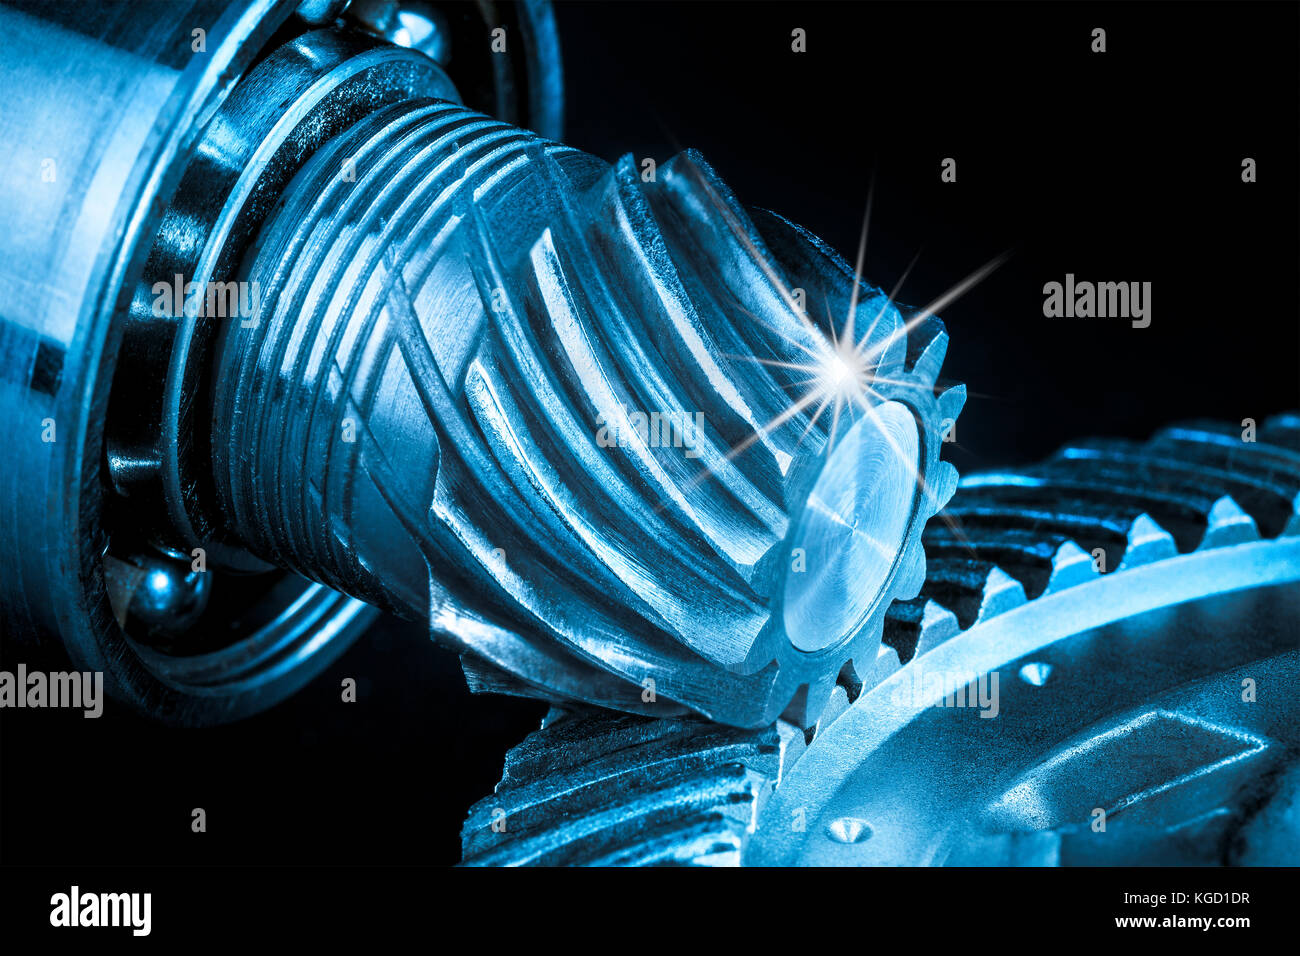 Belle close-up d'acier mécanisme. abstract background industriel avec roues dentées en bleu et noir. Banque D'Images